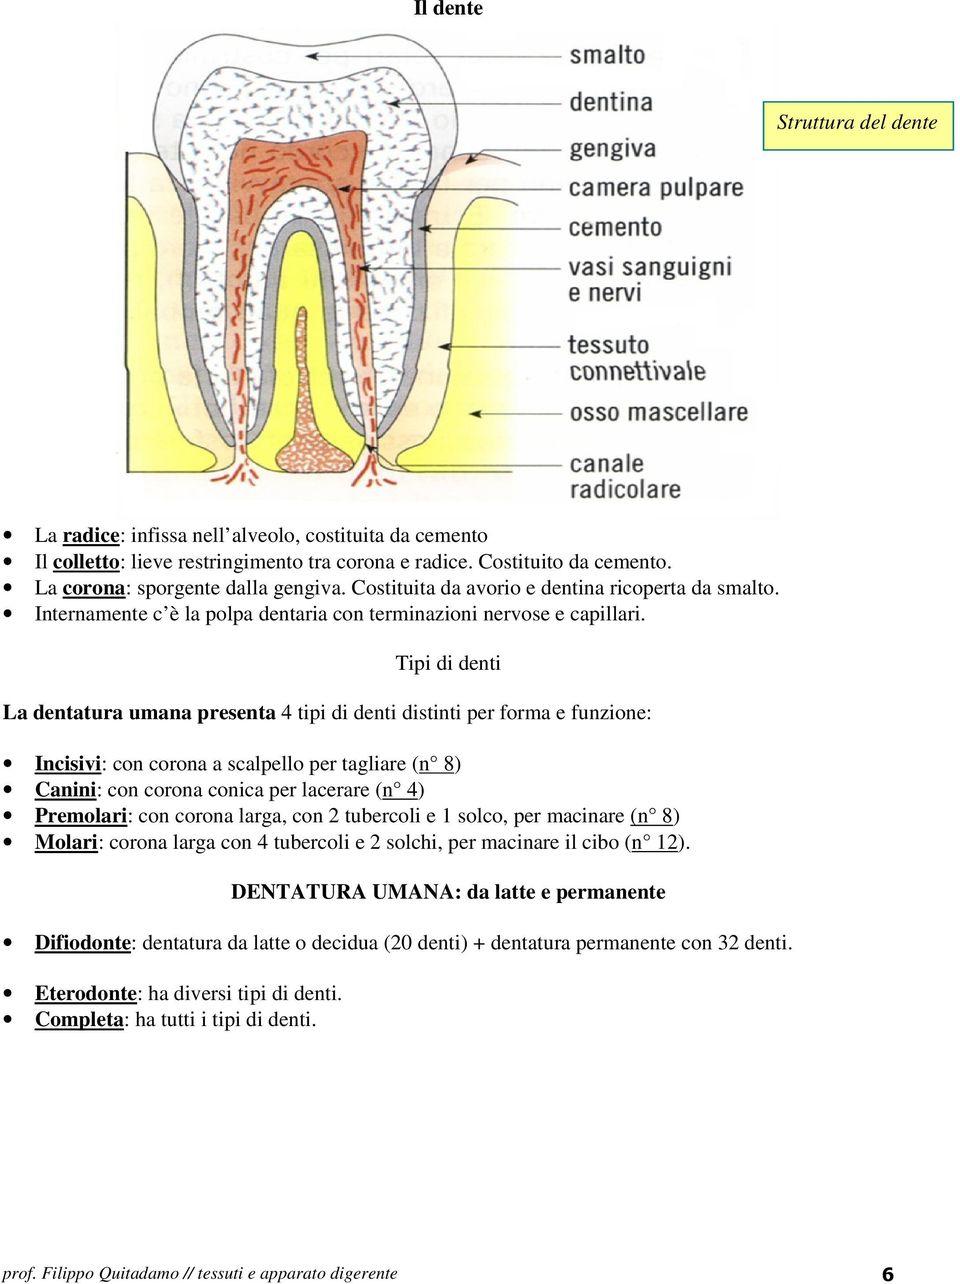 Tipi di denti La dentatura umana presenta 4 tipi di denti distinti per forma e funzione: Incisivi: con corona a scalpello per tagliare (n 8) Canini: con corona conica per lacerare (n 4) Premolari: